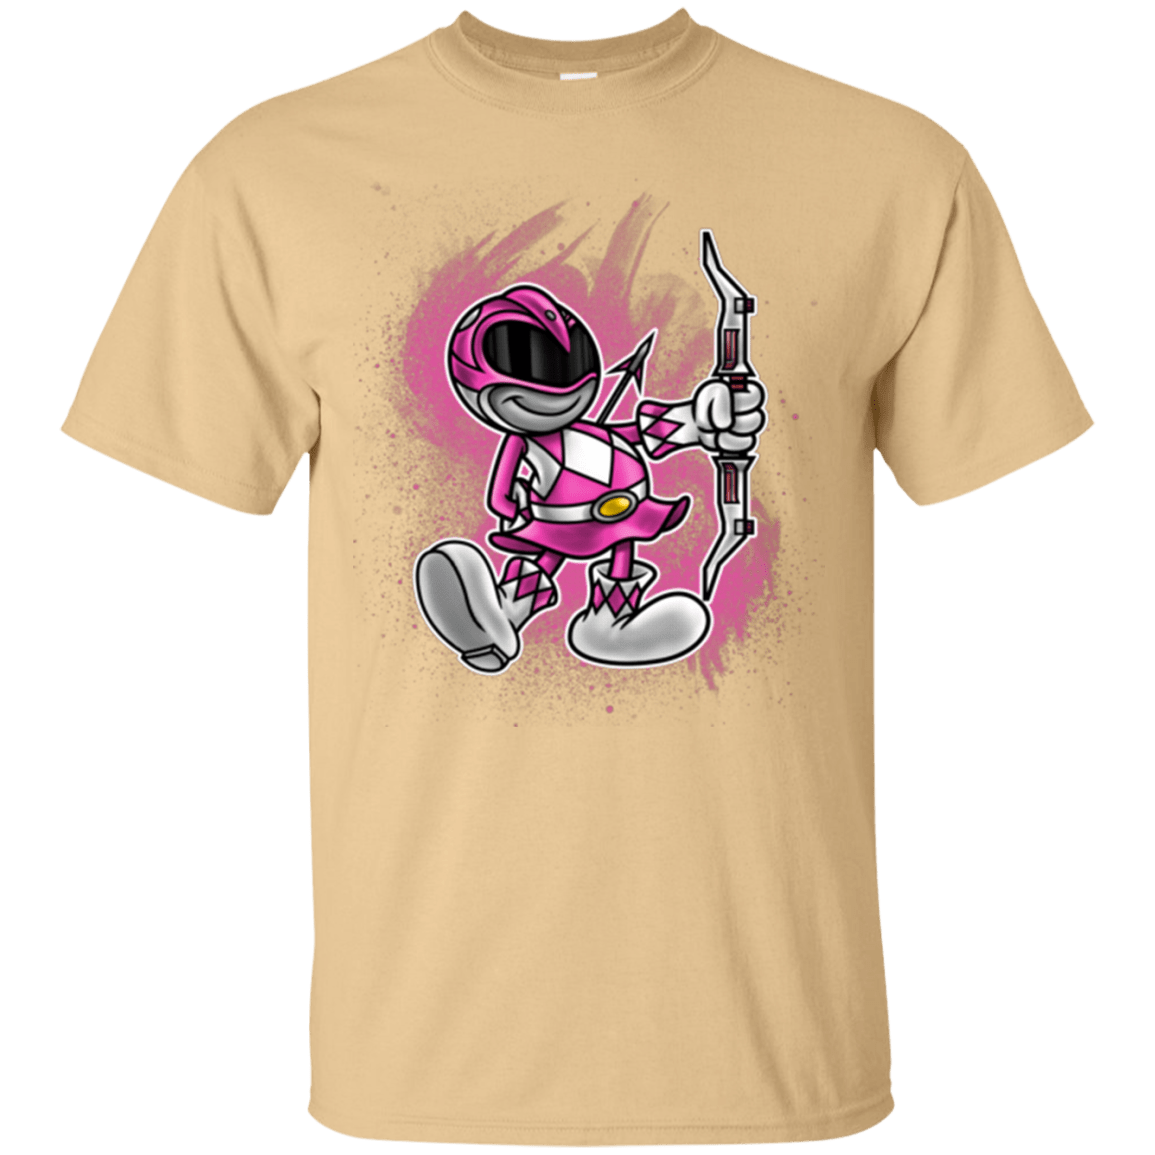 T-Shirts Vegas Gold / Small Pink Ranger Artwork T-Shirt